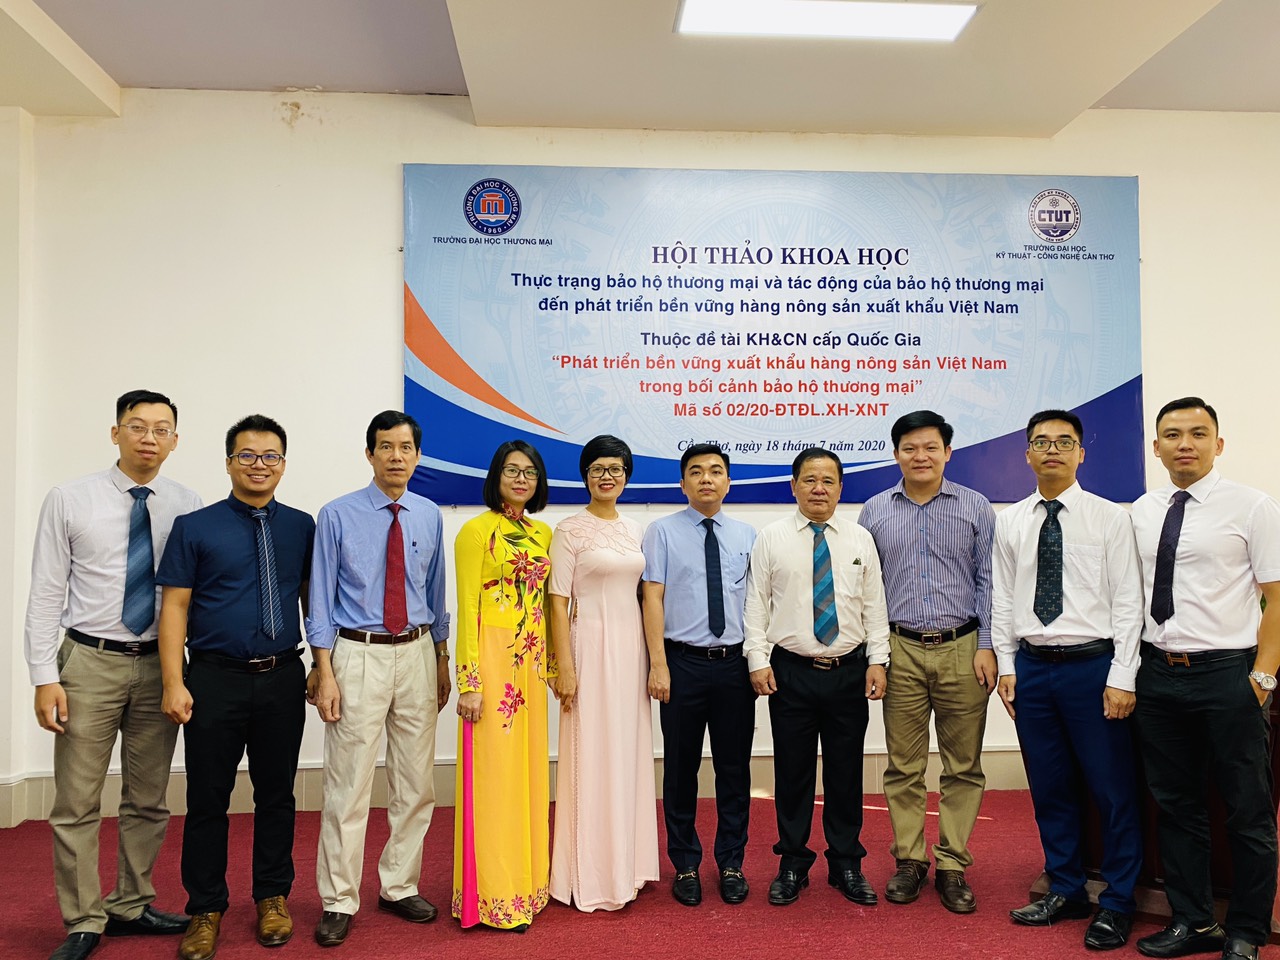 Hội thảo khoa học với chủ đề “Thực trạng bảo hộ thương mại và tác động của bảo hộ thương mại đến phát triển bền vững hàng nông sản xuất khẩu Việt Nam”